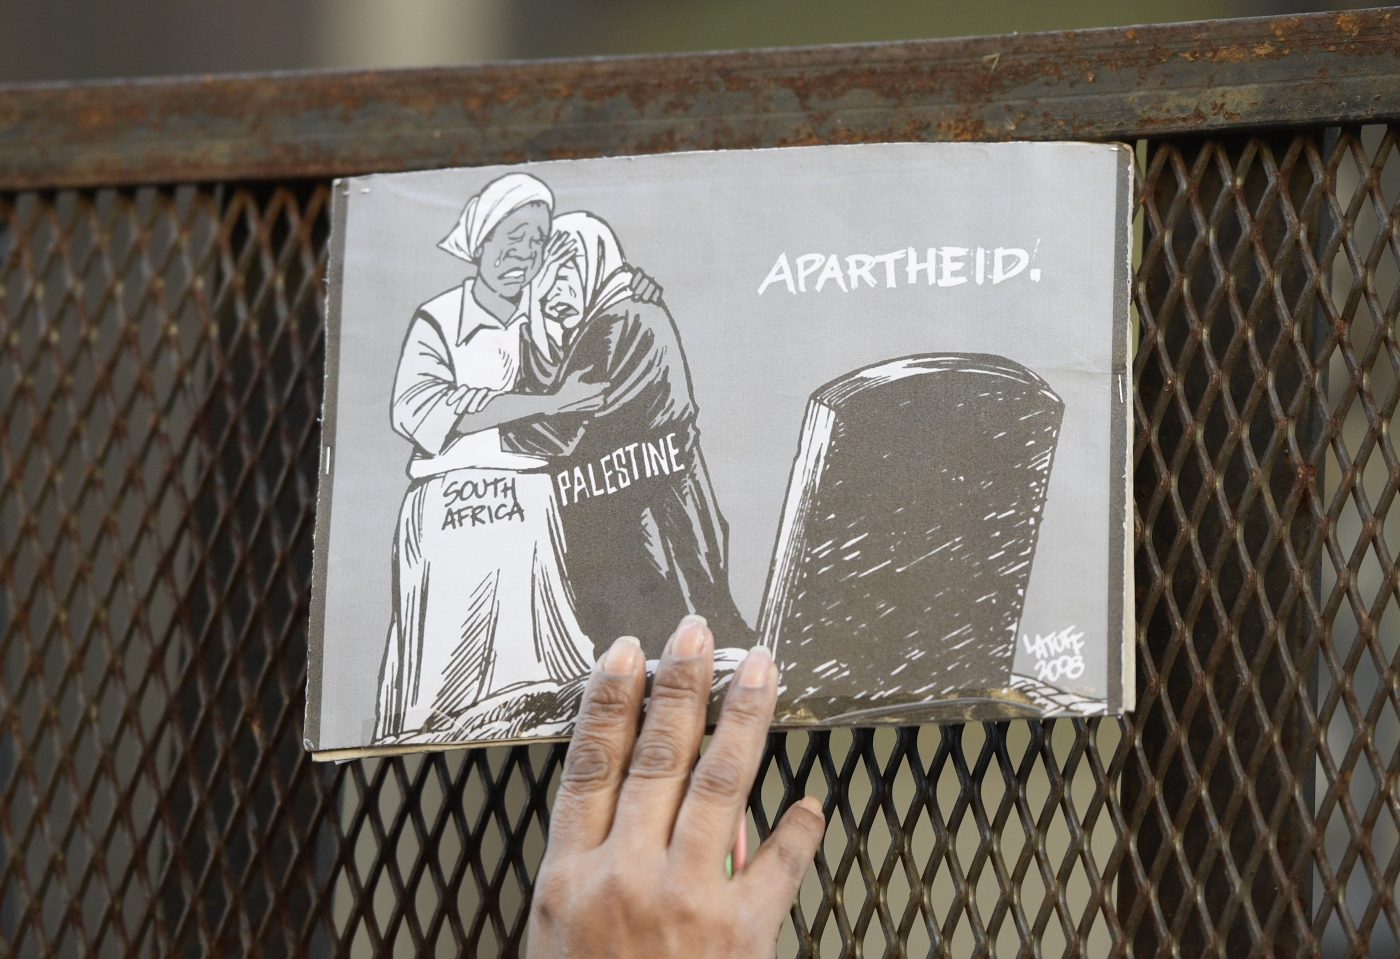 Une caricature contre l’apartheid et le racisme placée sur une barrière de sécurité, lors d’une manifestation devant l’ambassade israélienne, à Buenos Aires (Argentine), le 12 septembre 2017 (AFP)